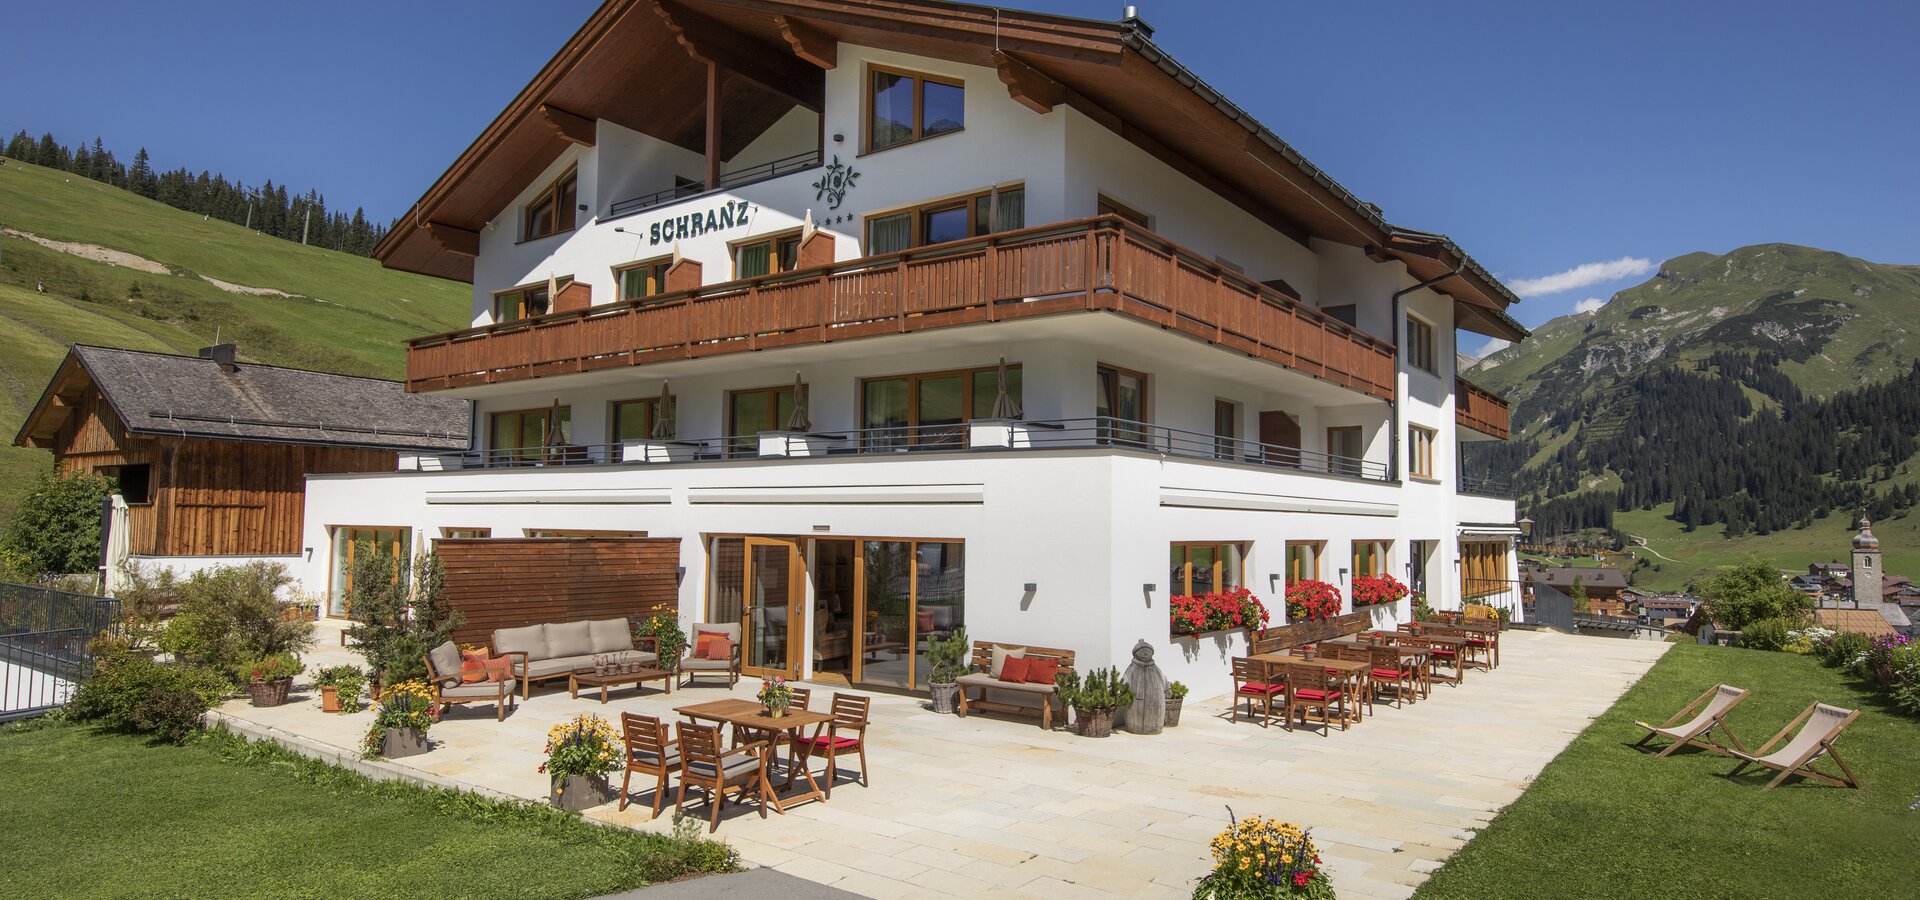 Hotel Schranz in Lech